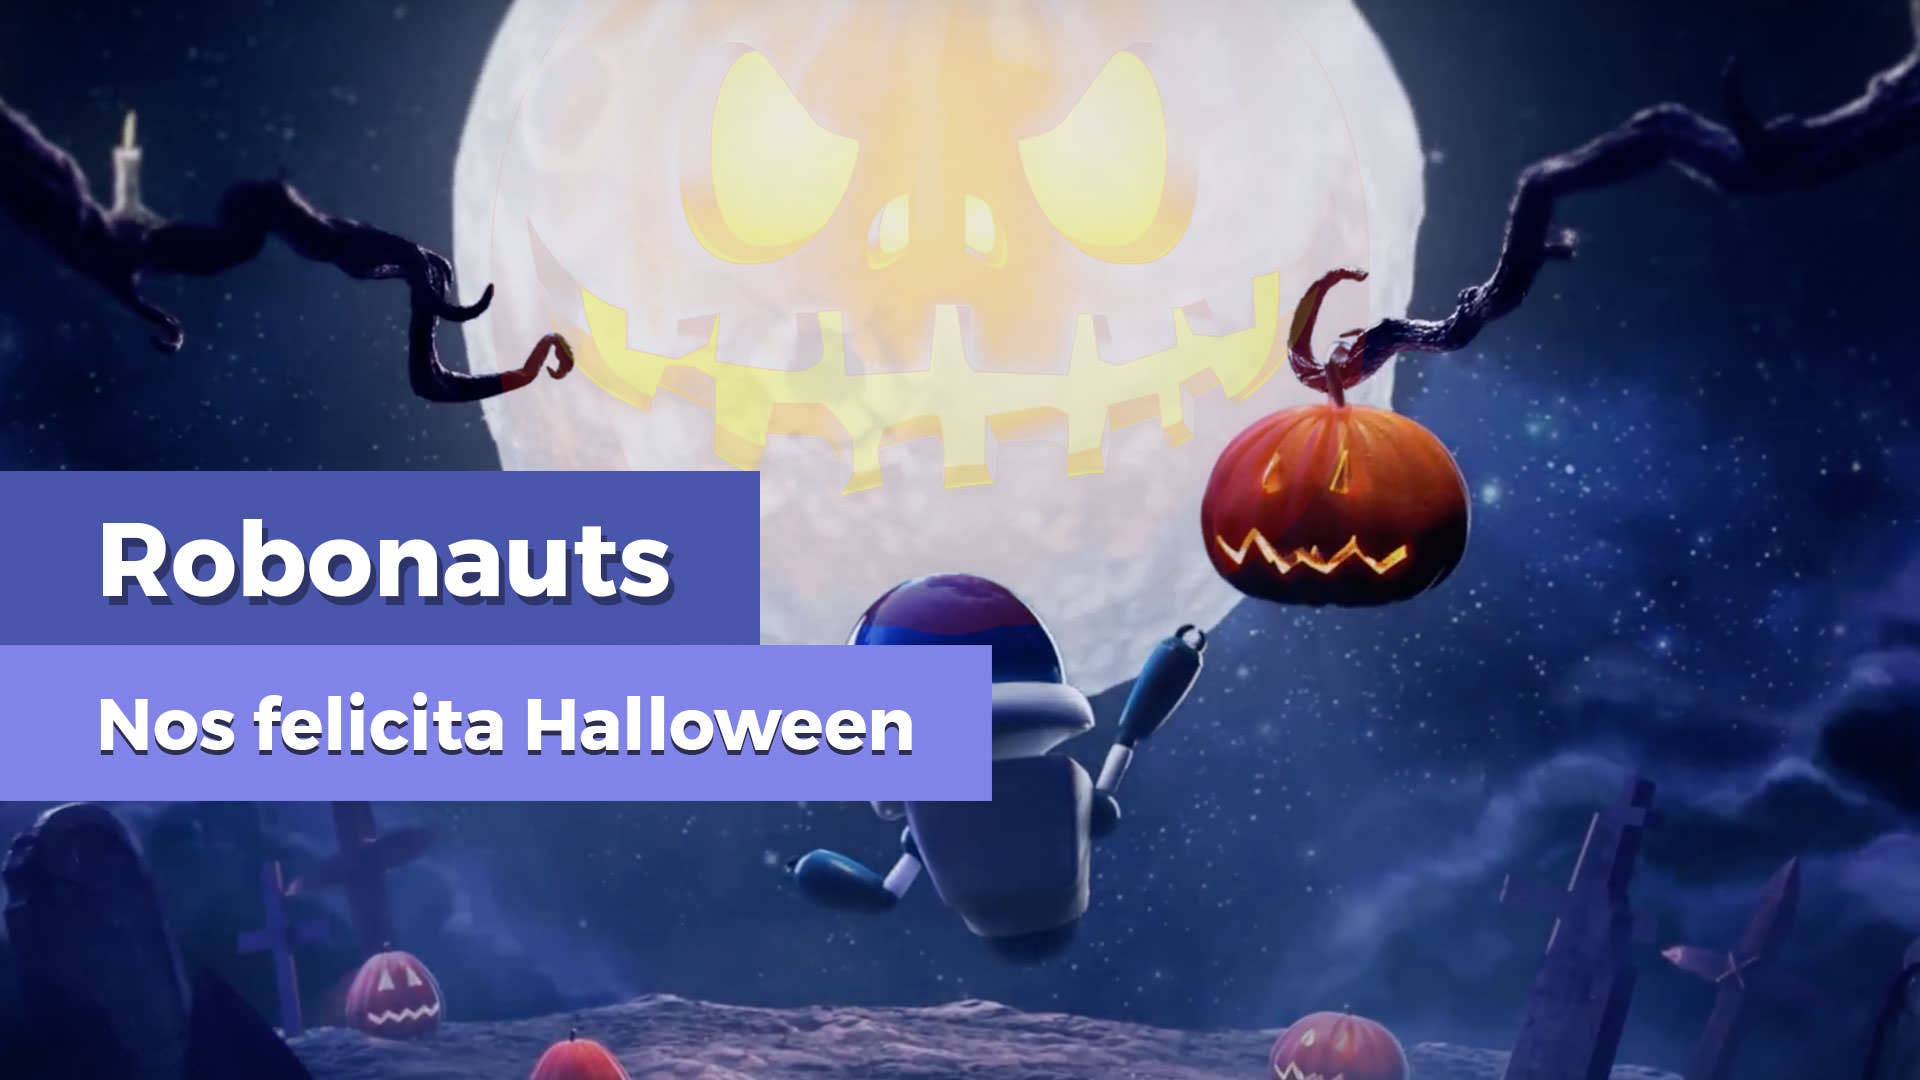 Robonauts celebra Halloween con un vídeo especial y descuento en Switch